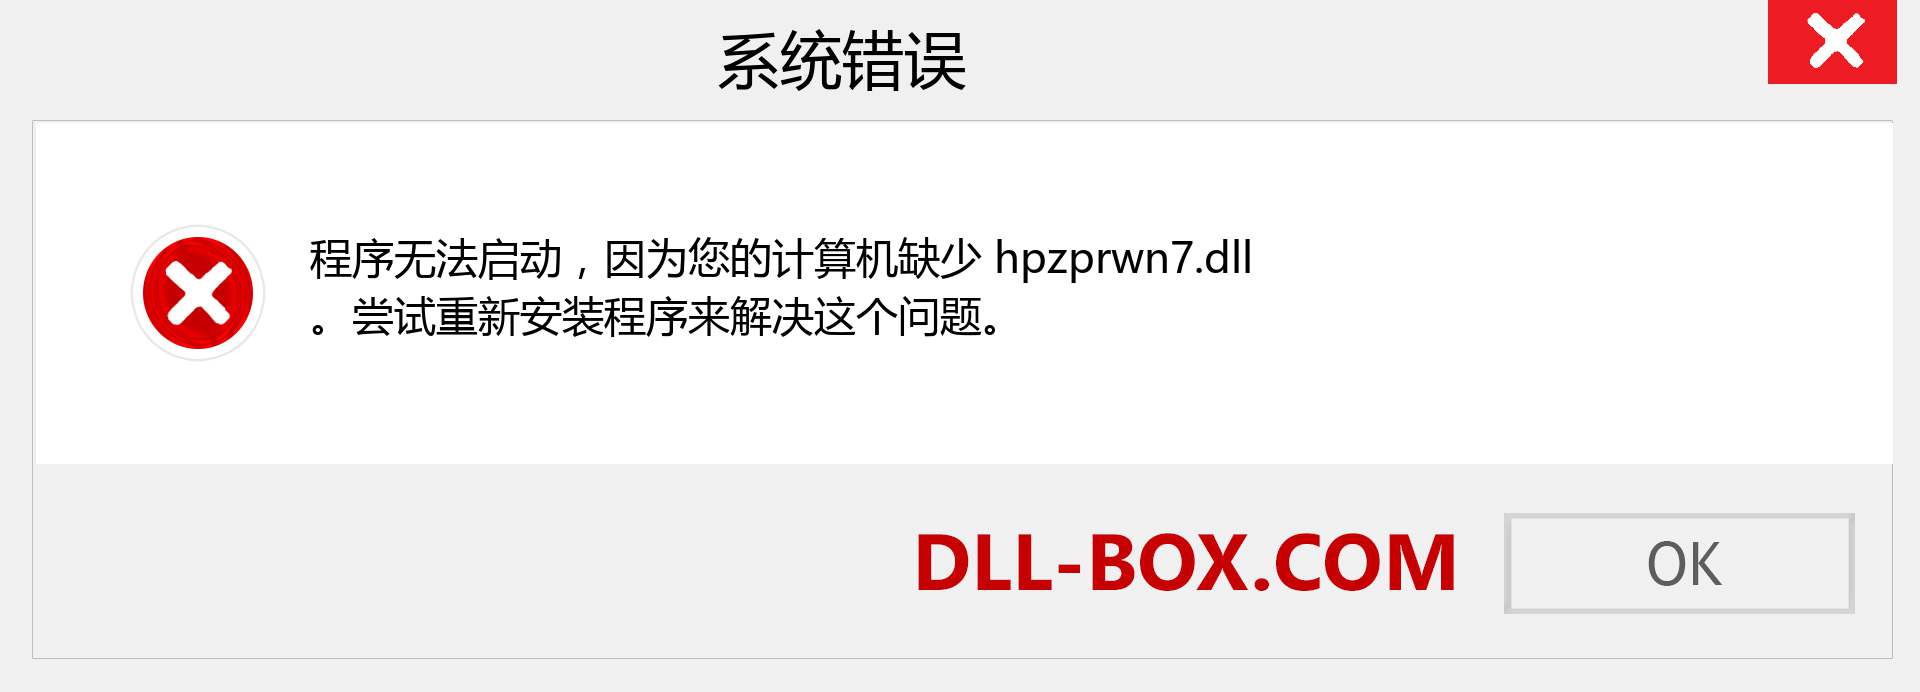 hpzprwn7.dll 文件丢失？。 适用于 Windows 7、8、10 的下载 - 修复 Windows、照片、图像上的 hpzprwn7 dll 丢失错误